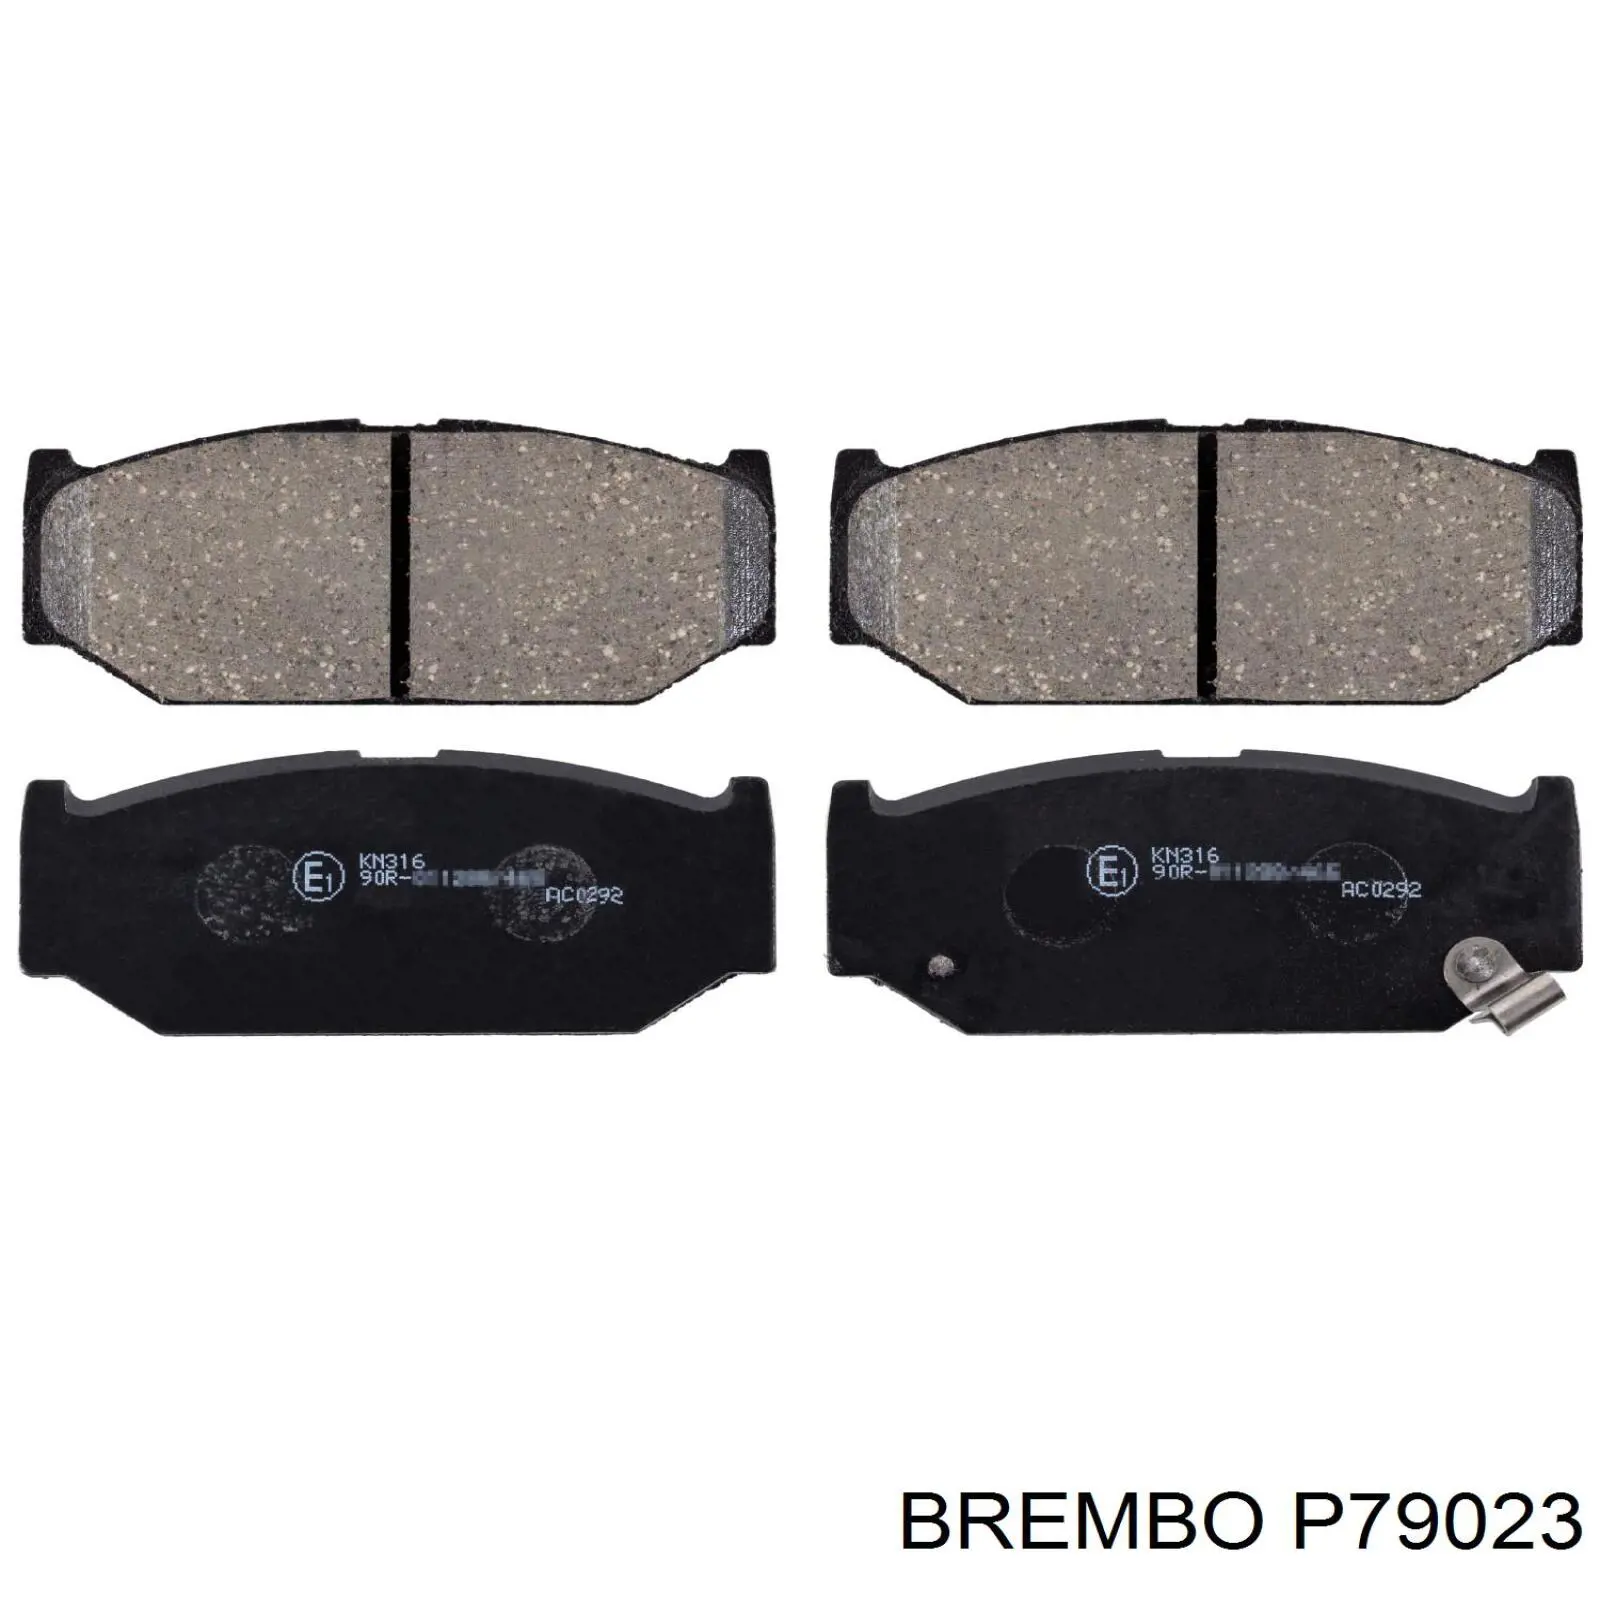 P79 023 Brembo колодки тормозные передние дисковые